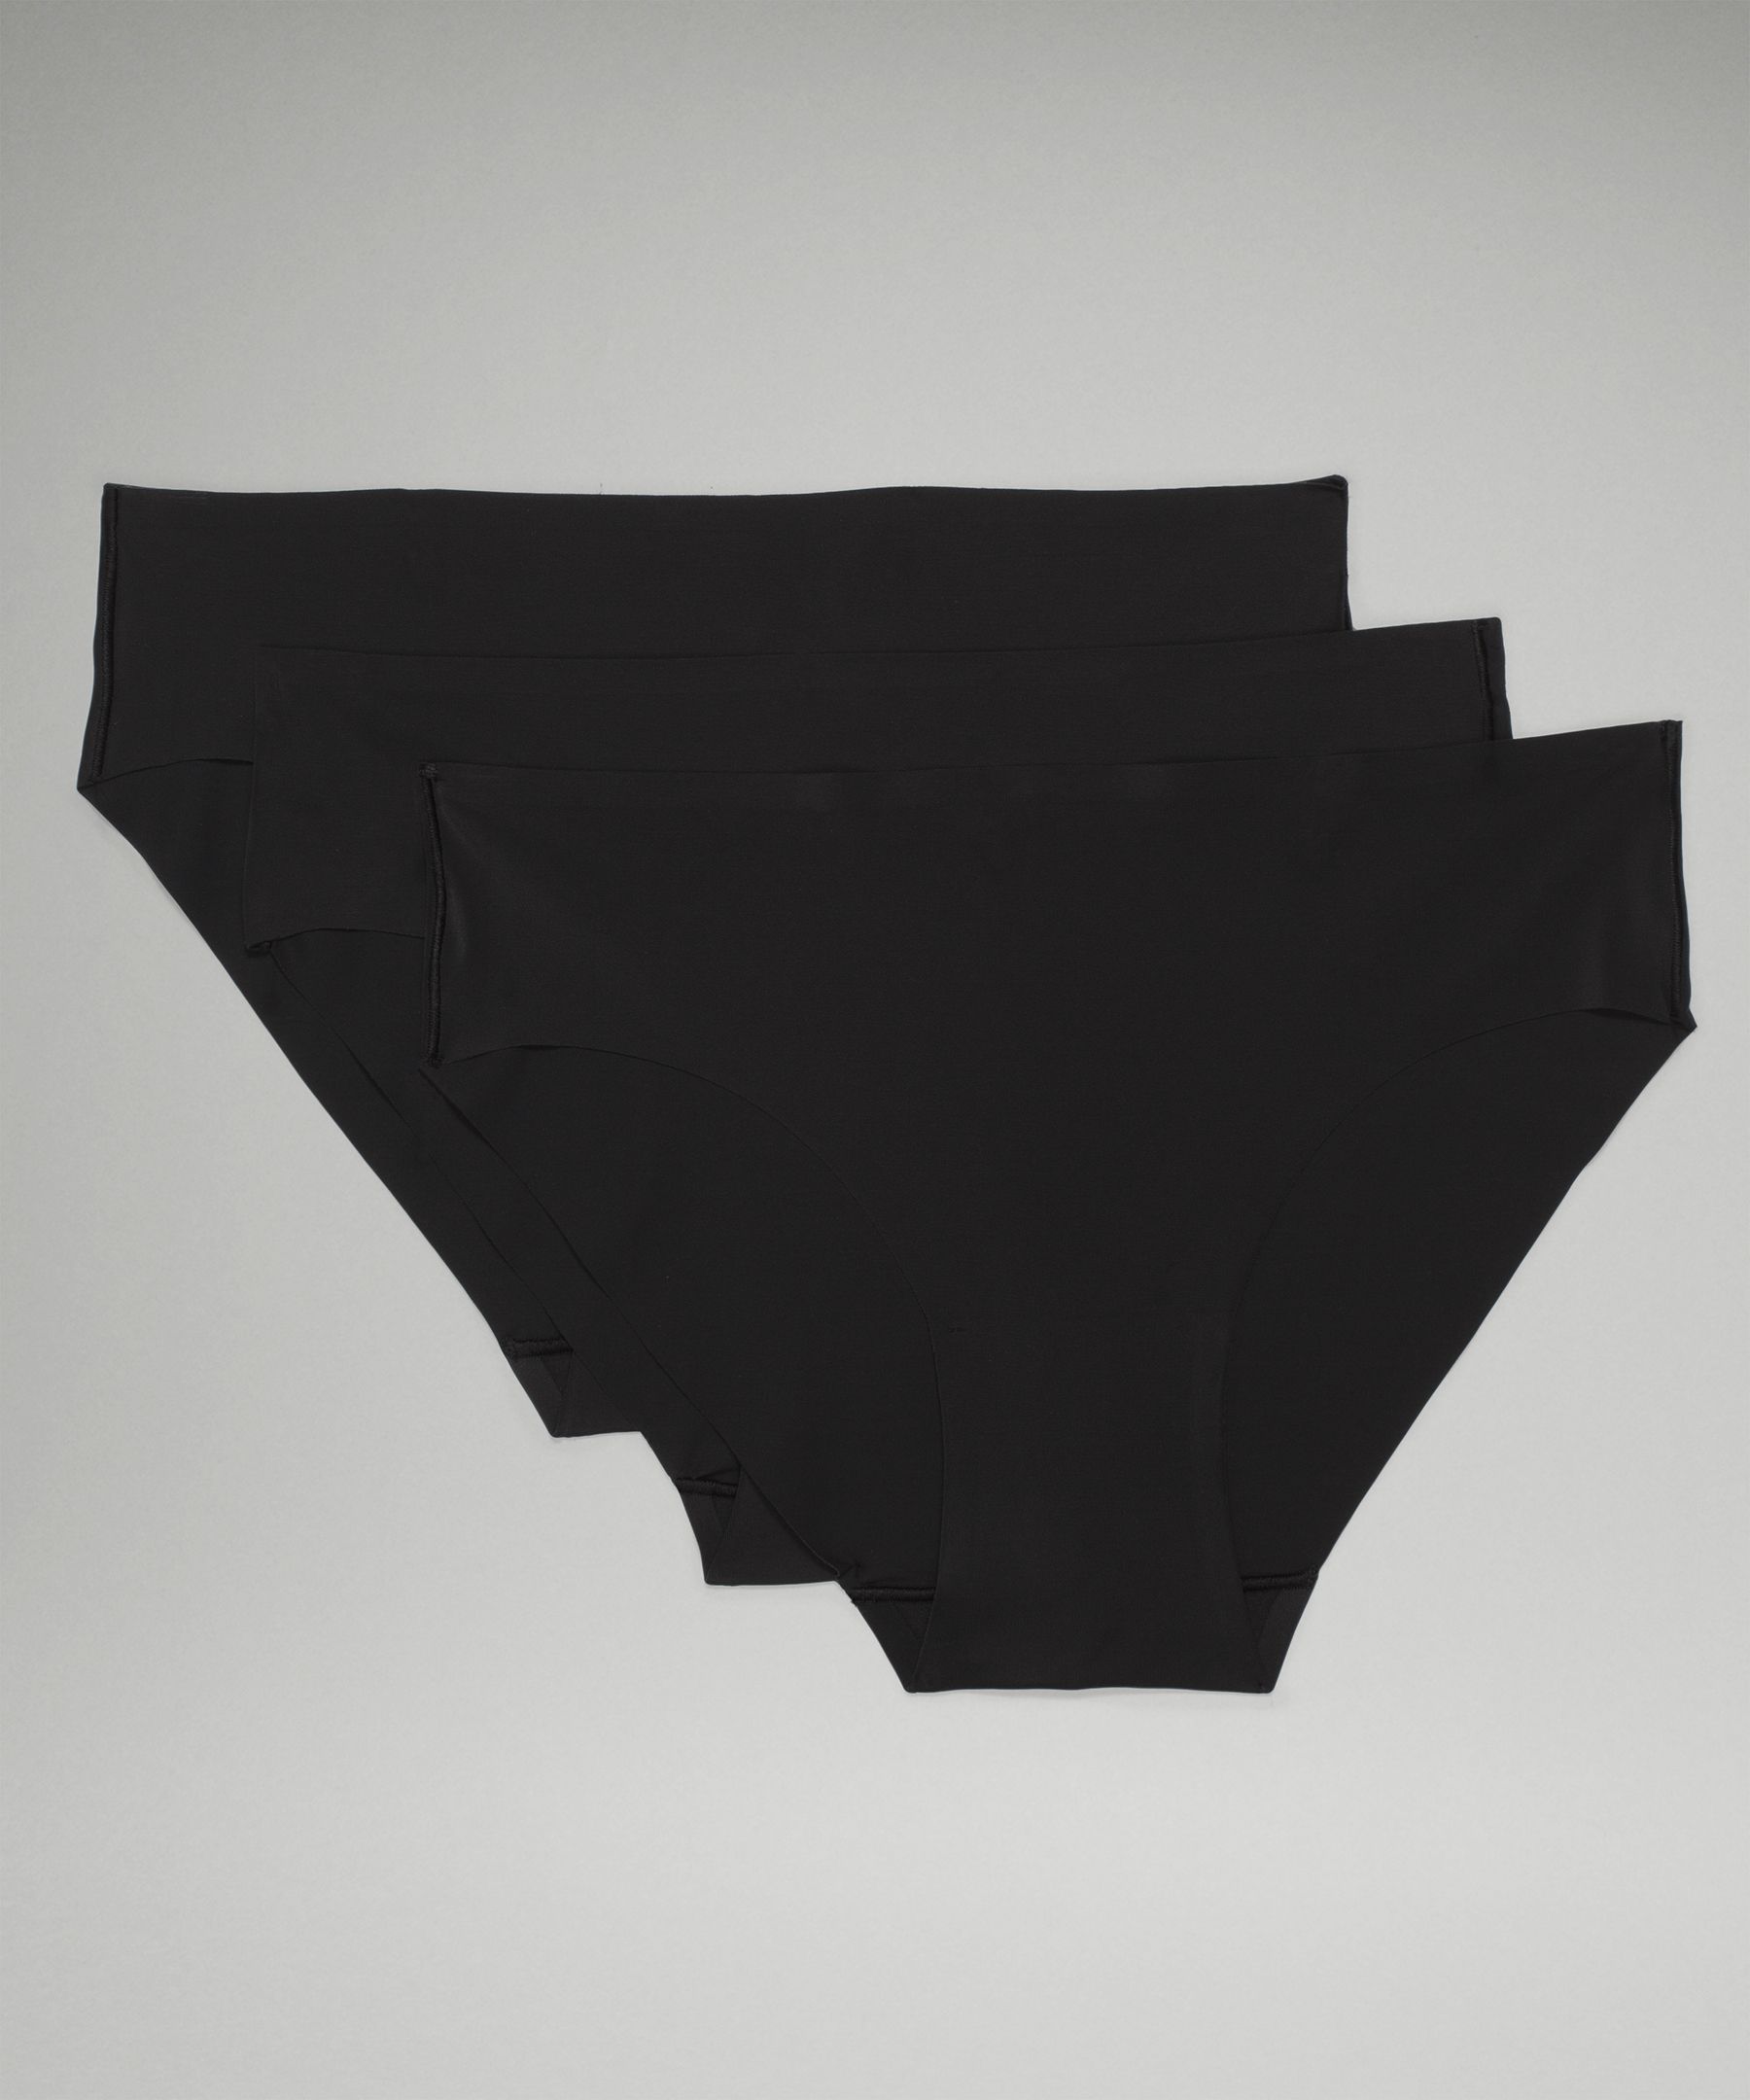 InvisiWear Mid-Rise Thong Underwear 3 Pack, Black/Liquidize Camo Mini WP  Black Multi/Dew Pink